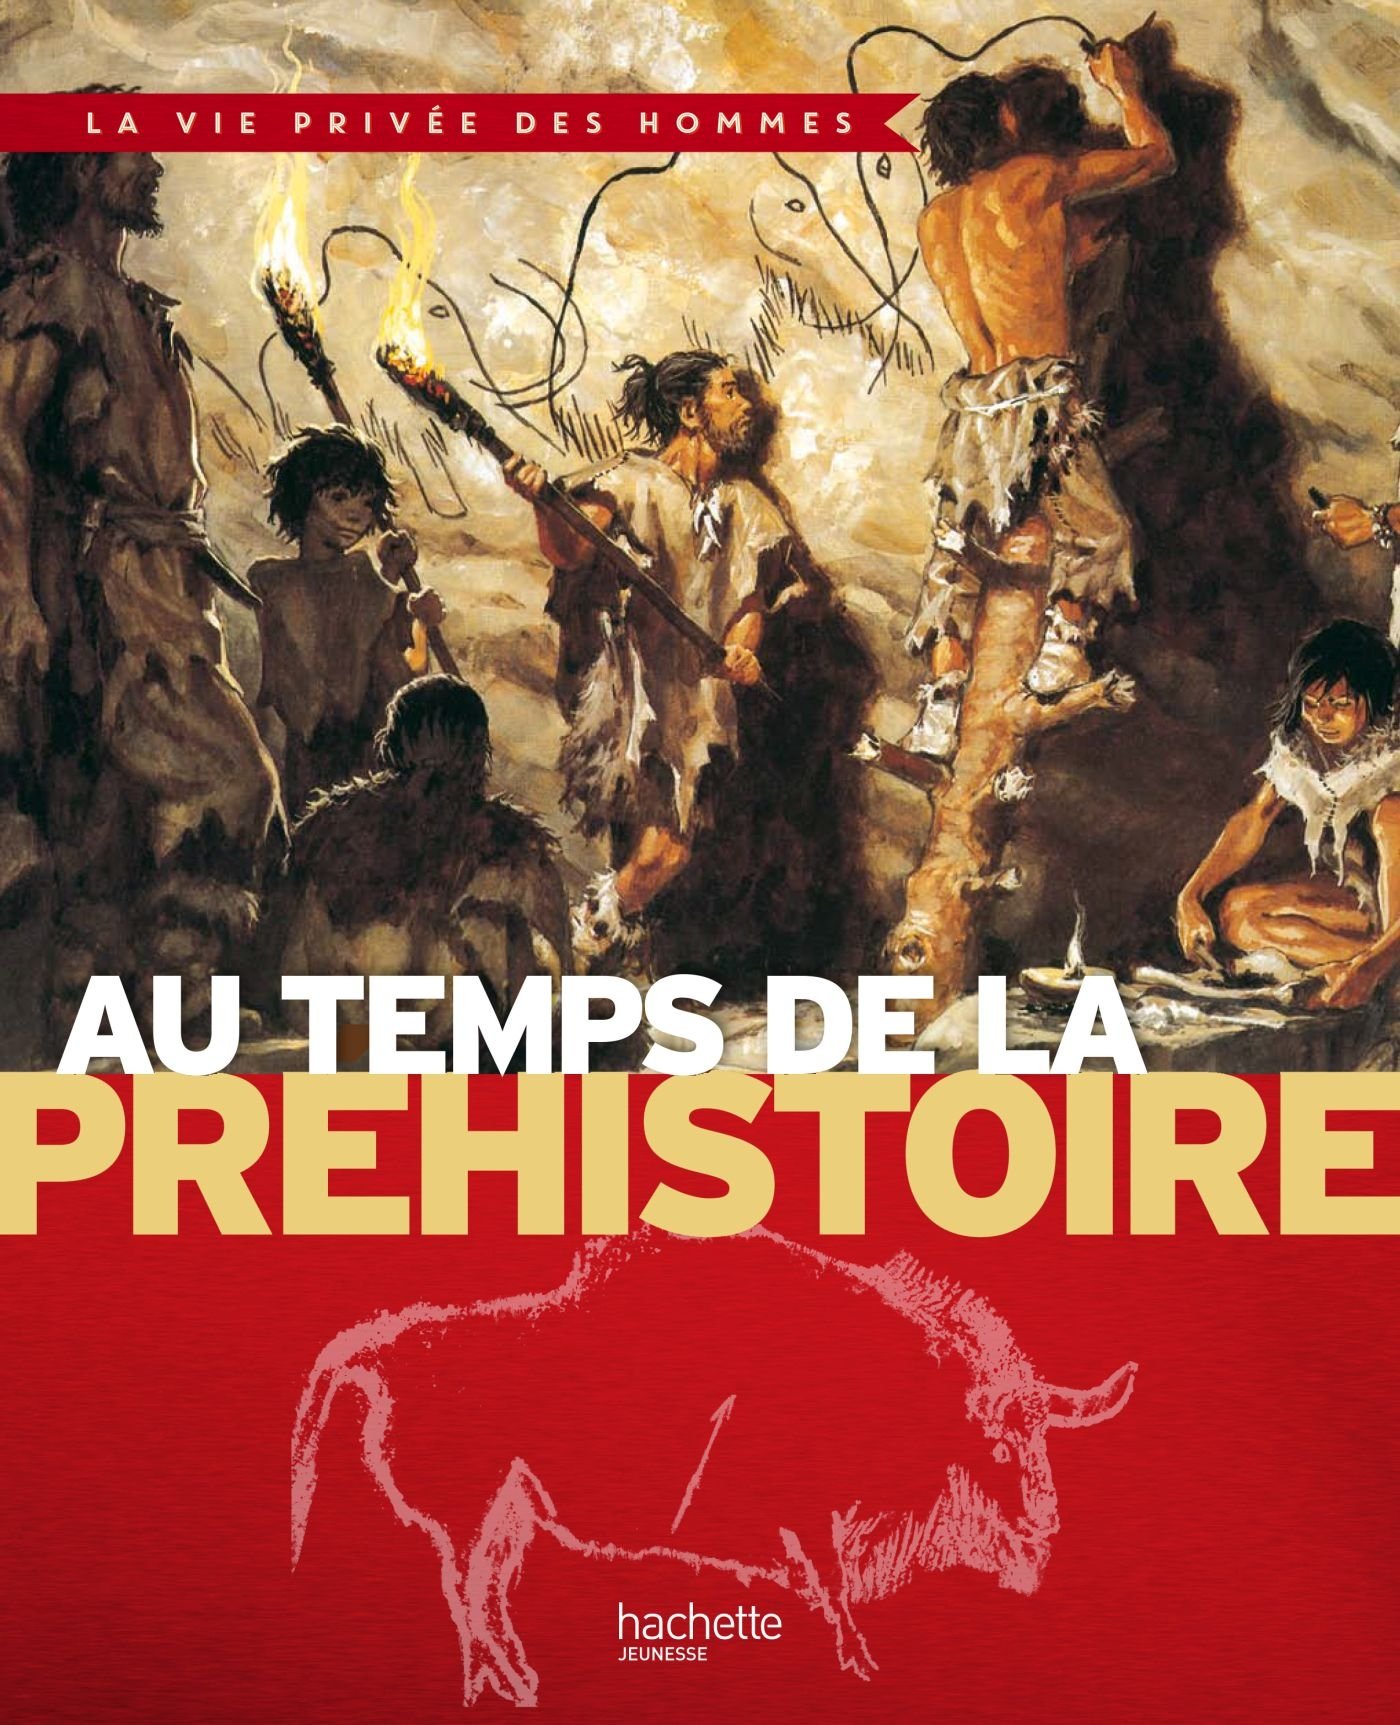 Au temps de la Préhistoire, (Coll. Vie Privée des hommes), 2014, 63 p., ill. coul., LIVRE POUR ENFANT.